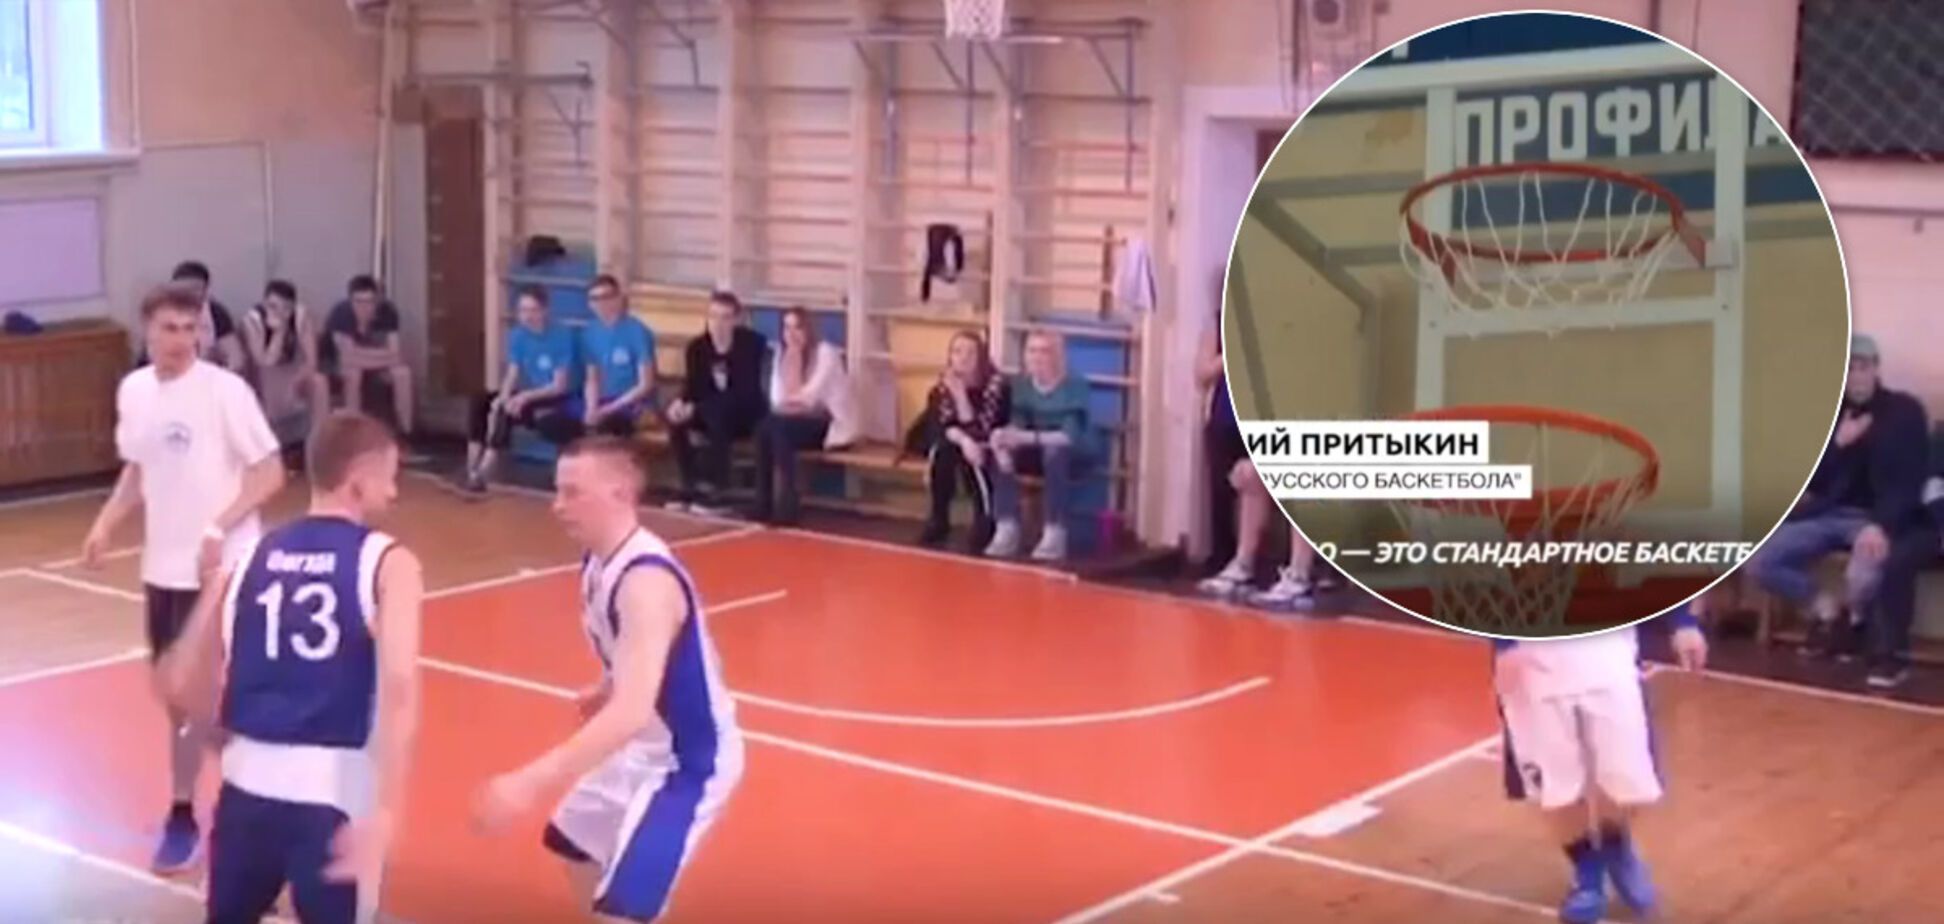 У Росії винайшли новий 'російський баскетбол' із чотирма кільцями